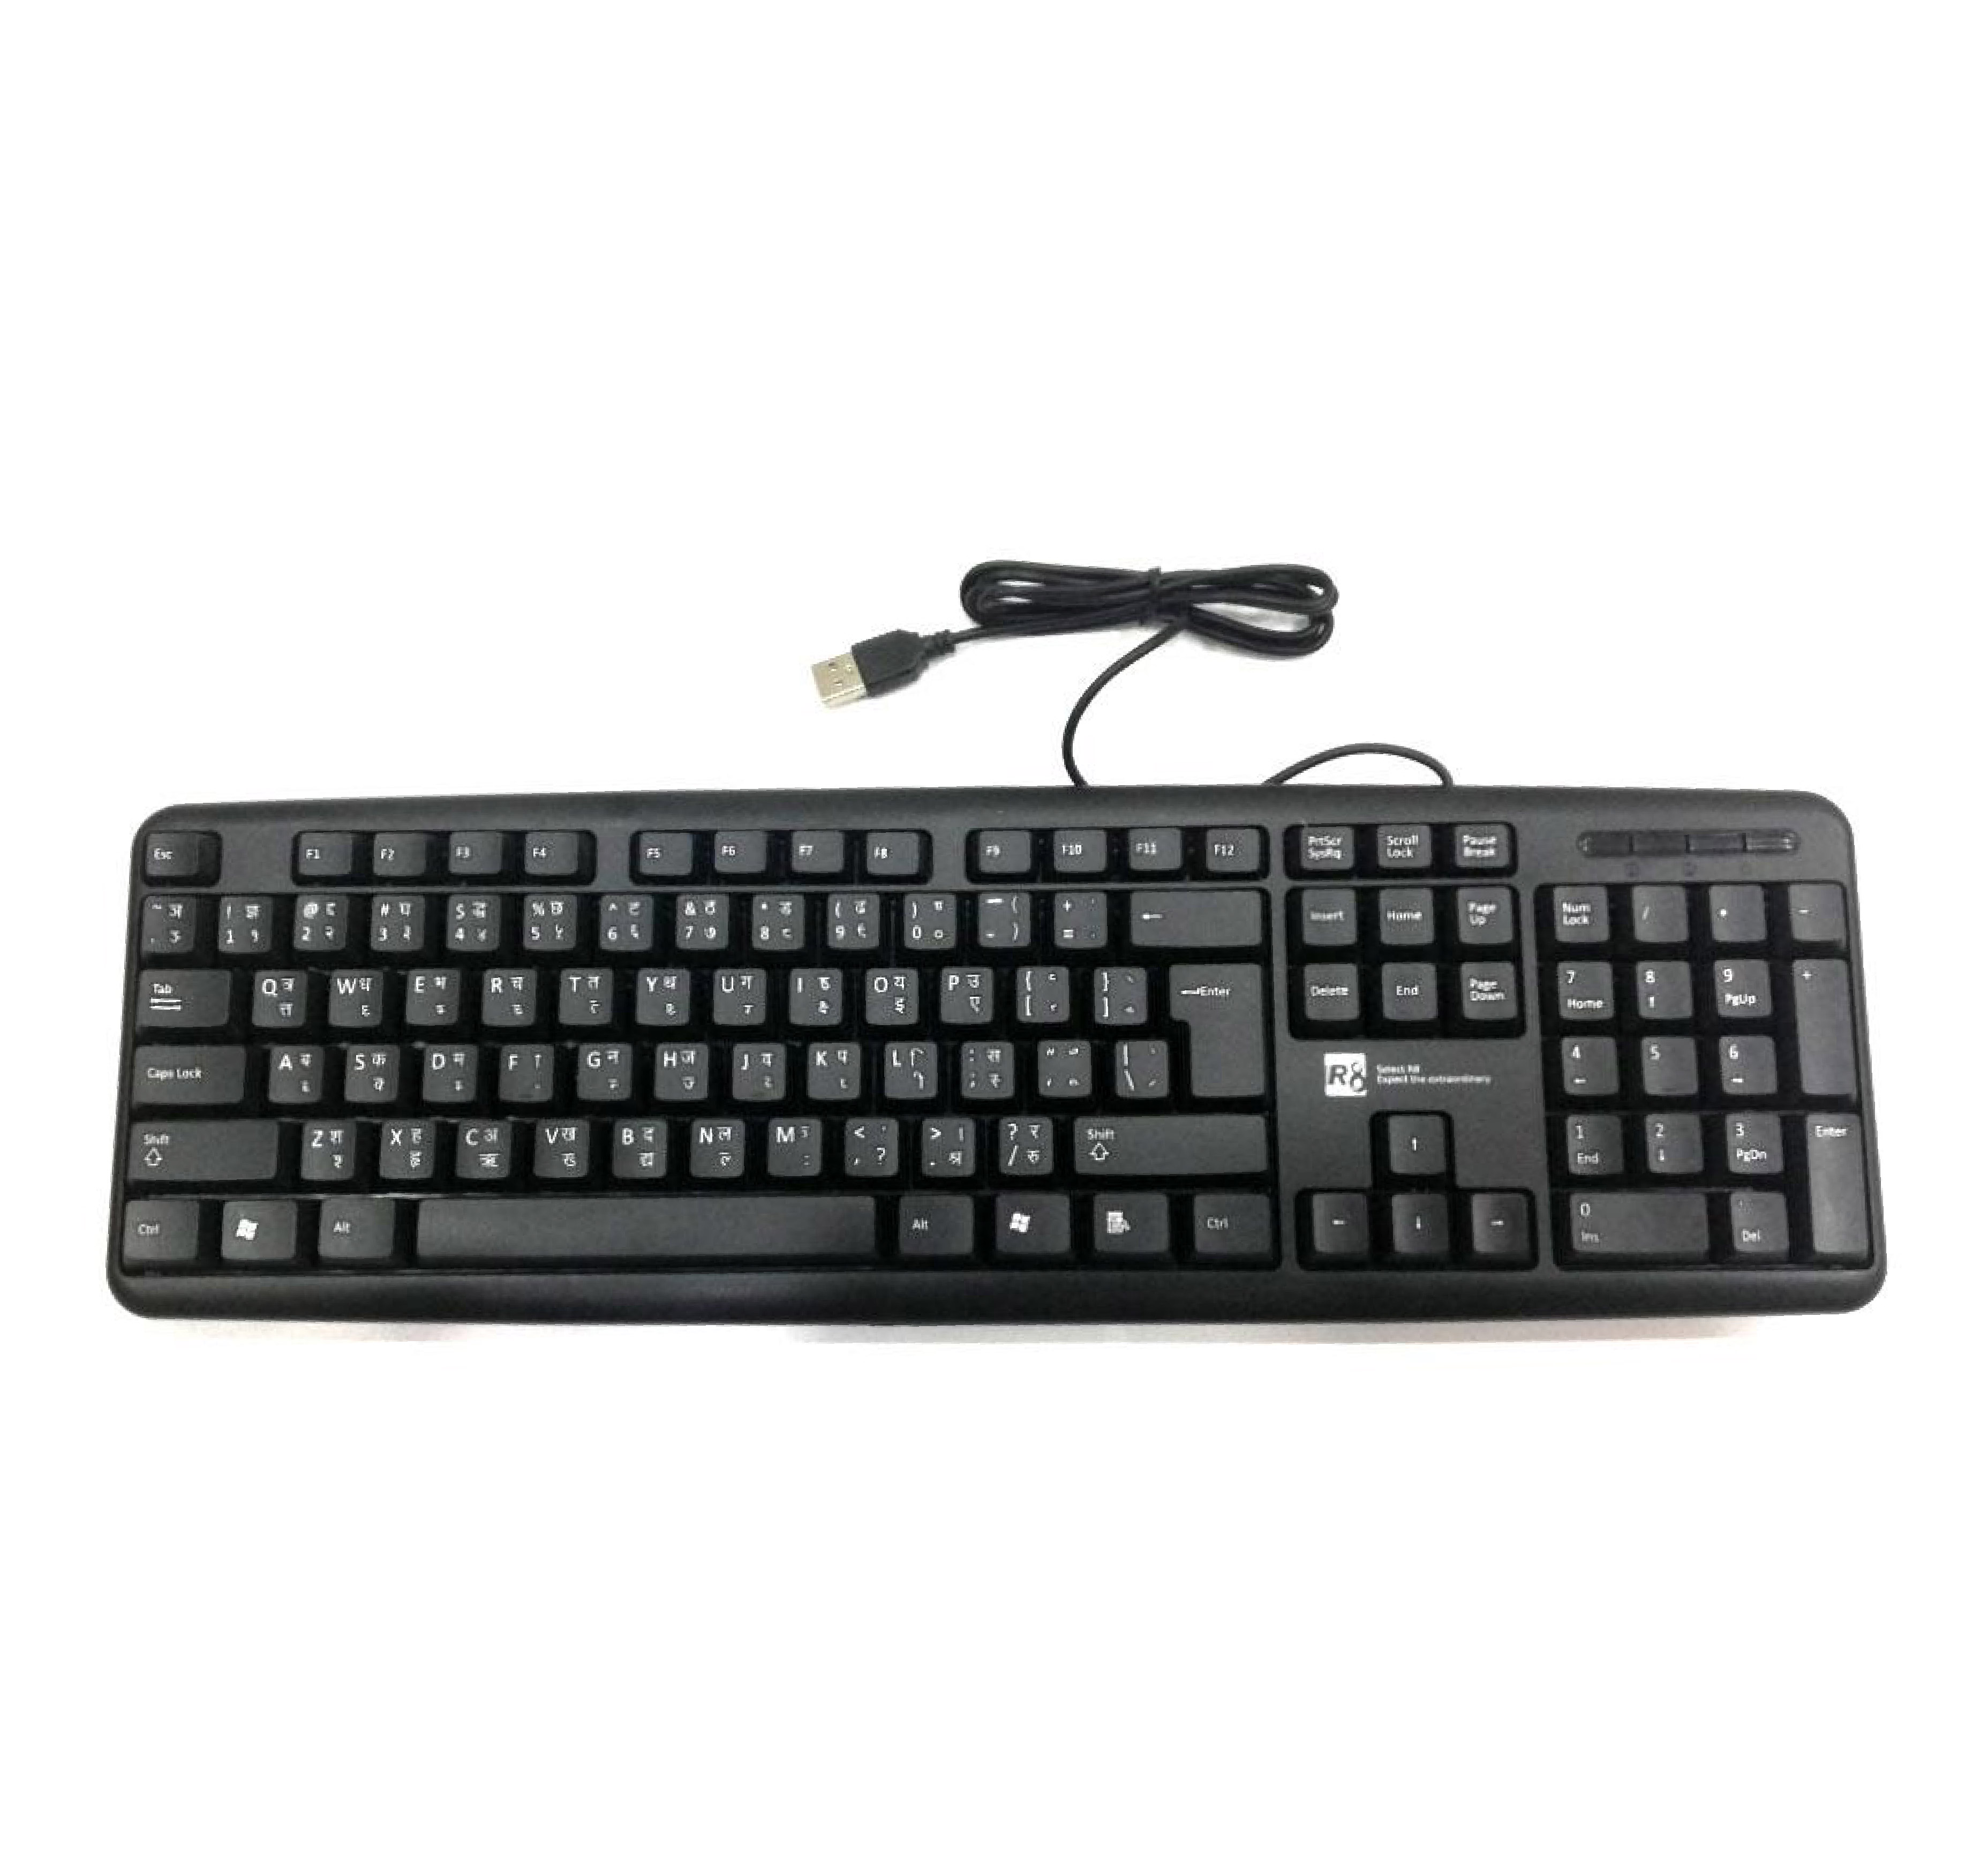 R8 1801 Keyboard